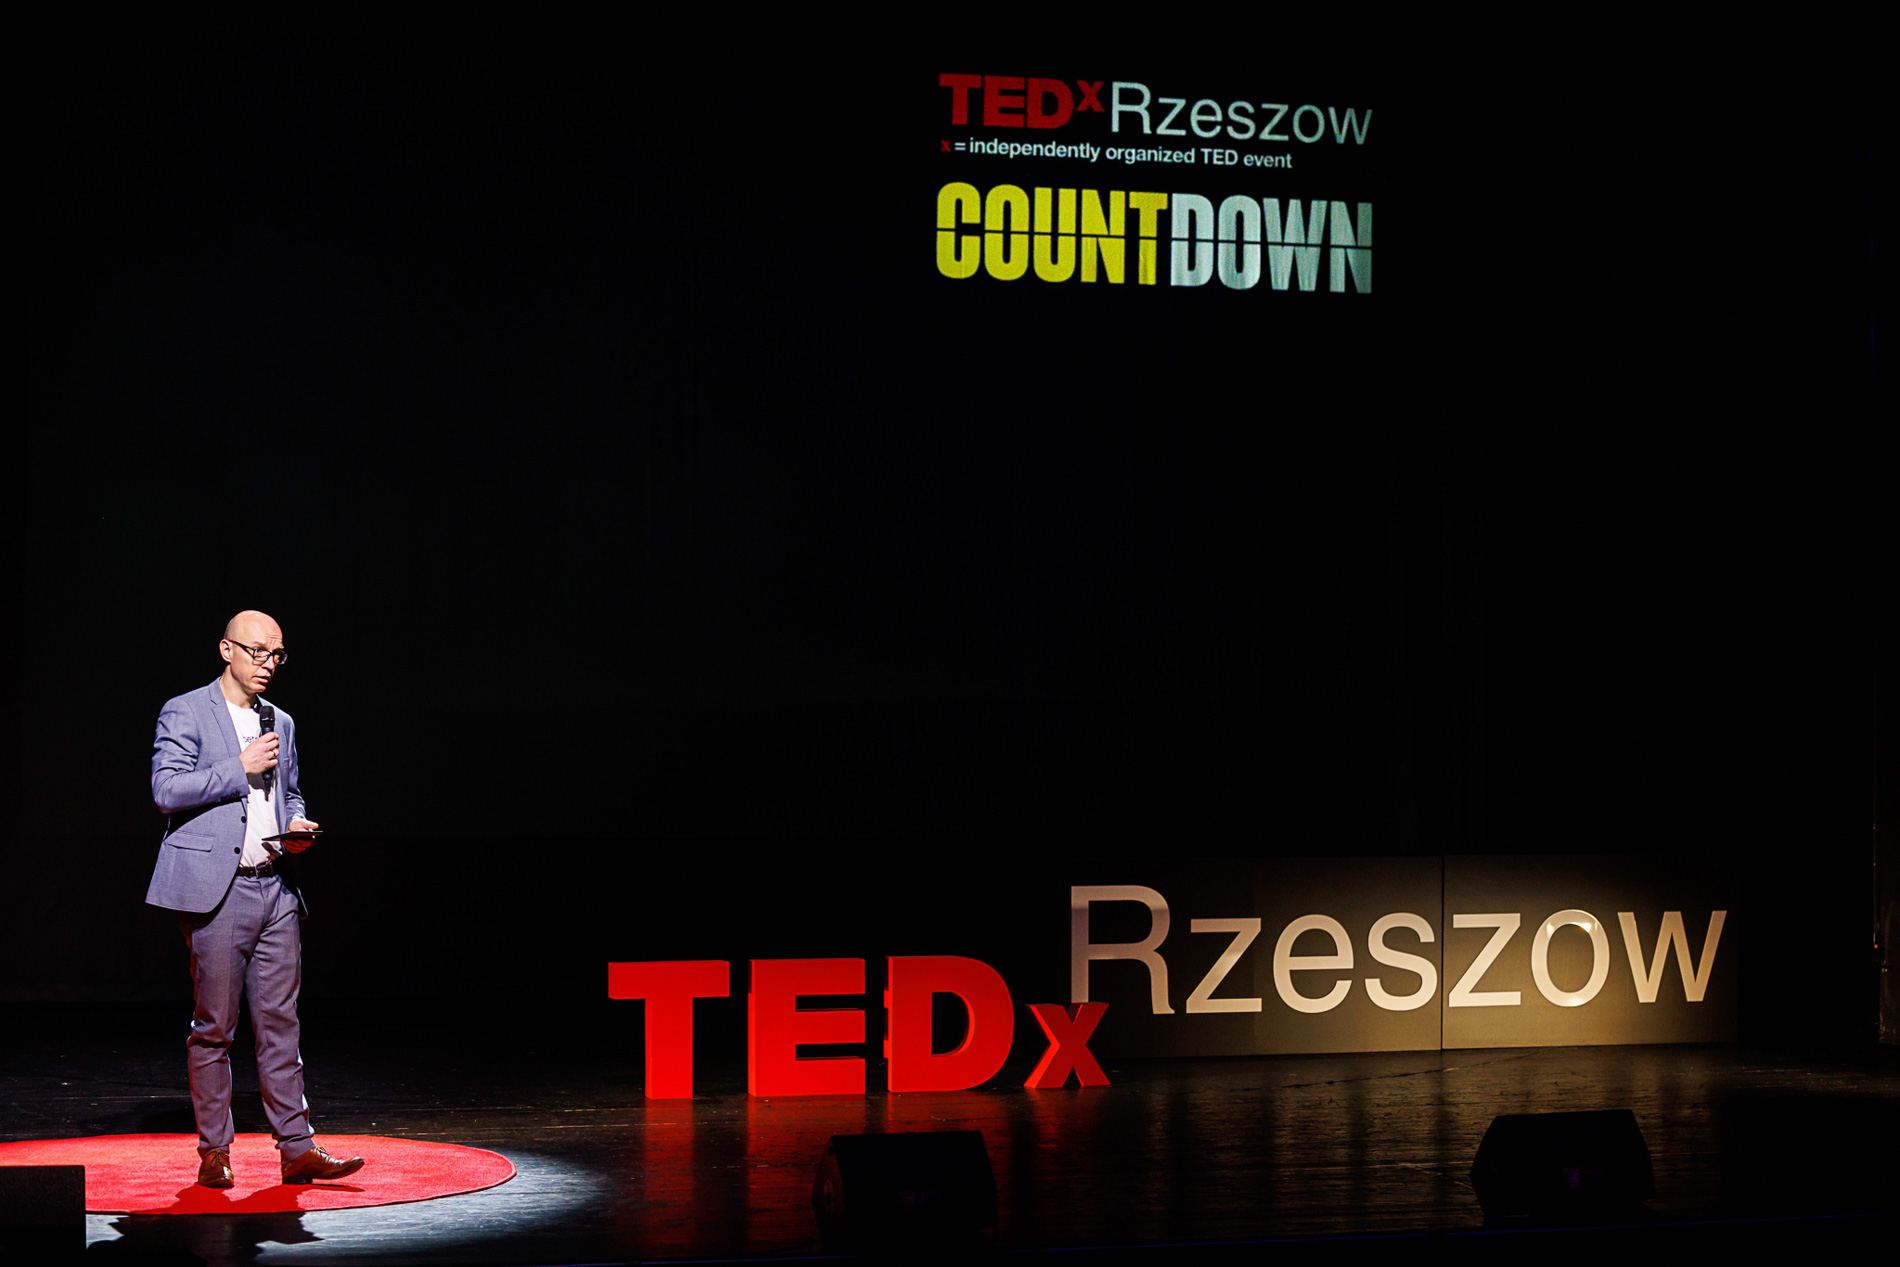 Prowadzący Łukasz Bis na scenie teatru podczas wydarzenia TEDx Rzeszów Countdown WSIiZ